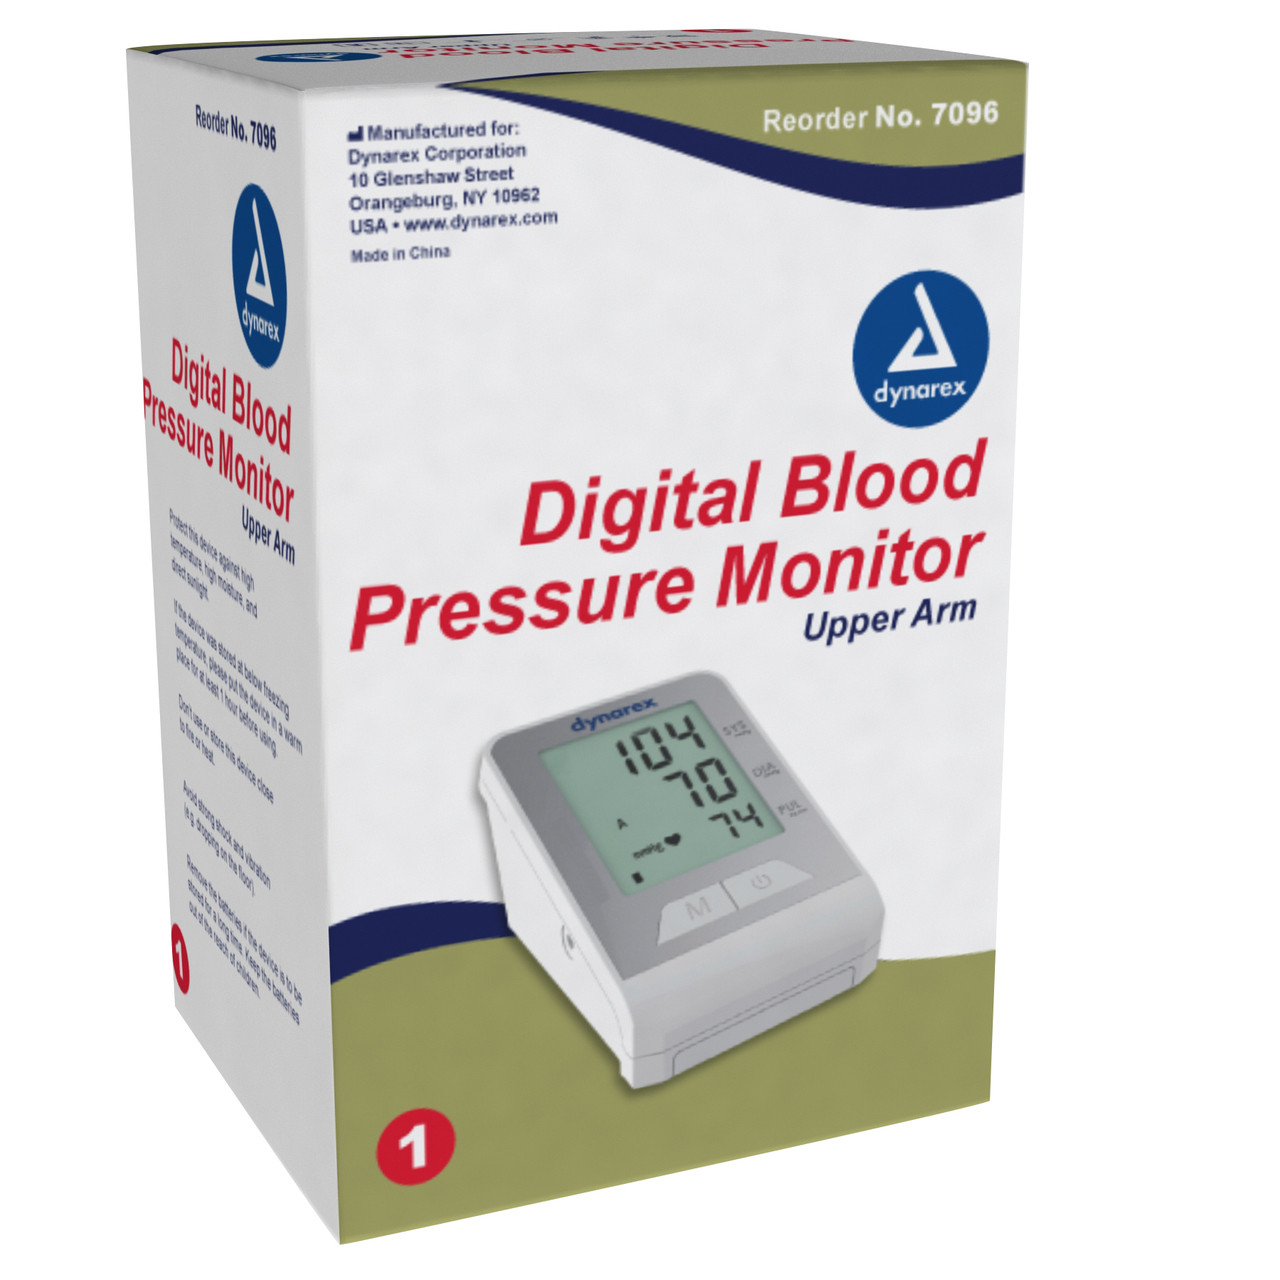 Plus-Sized Bariatric Blood Pressure Cuff